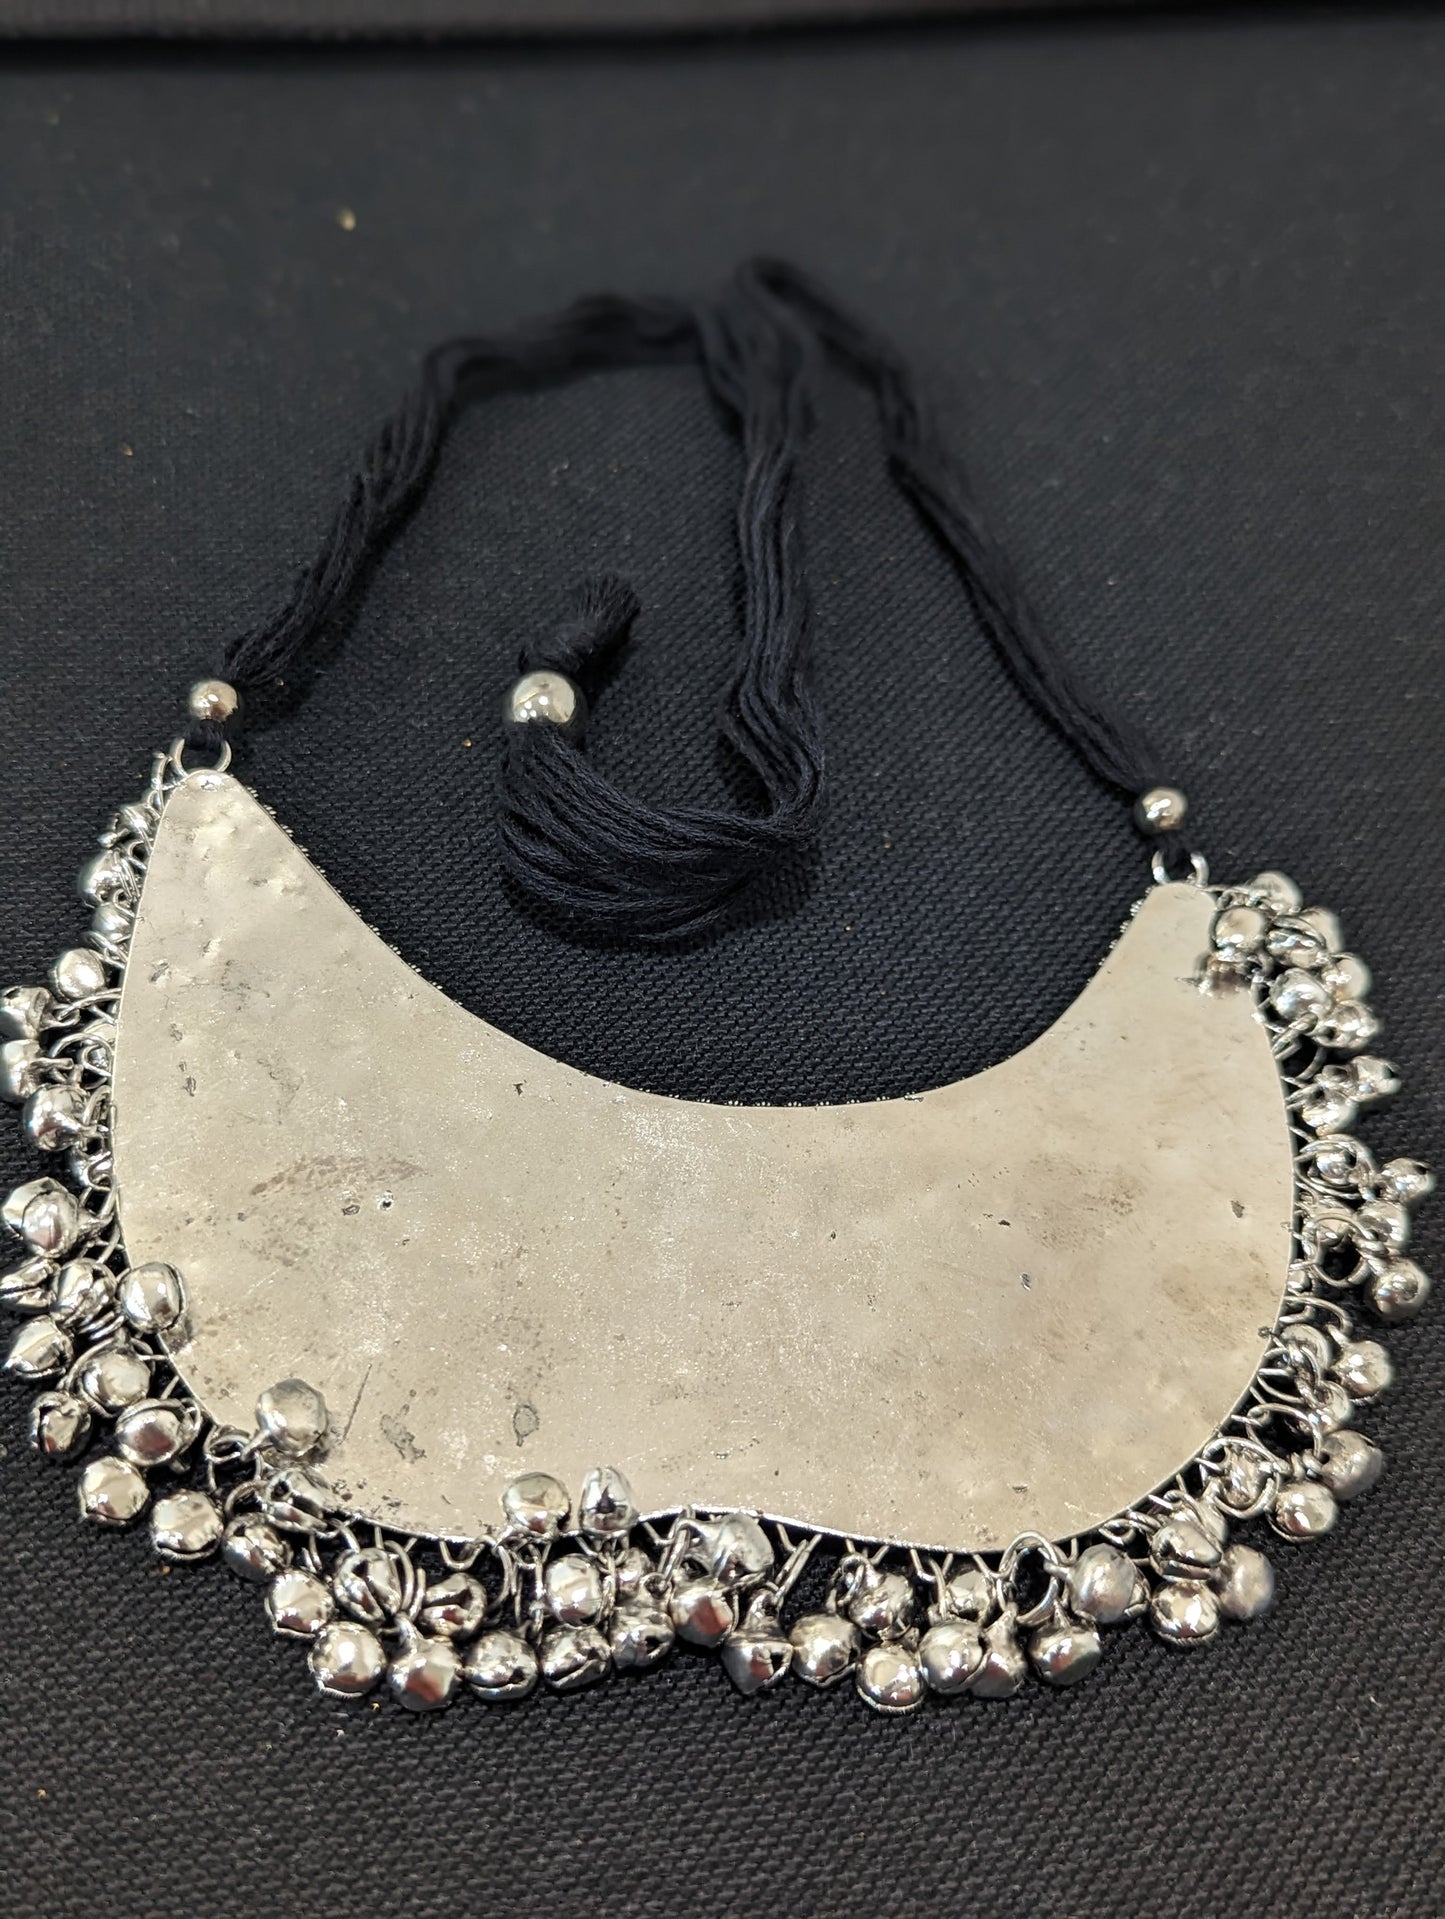 Silver rhodium Broad pendant necklace